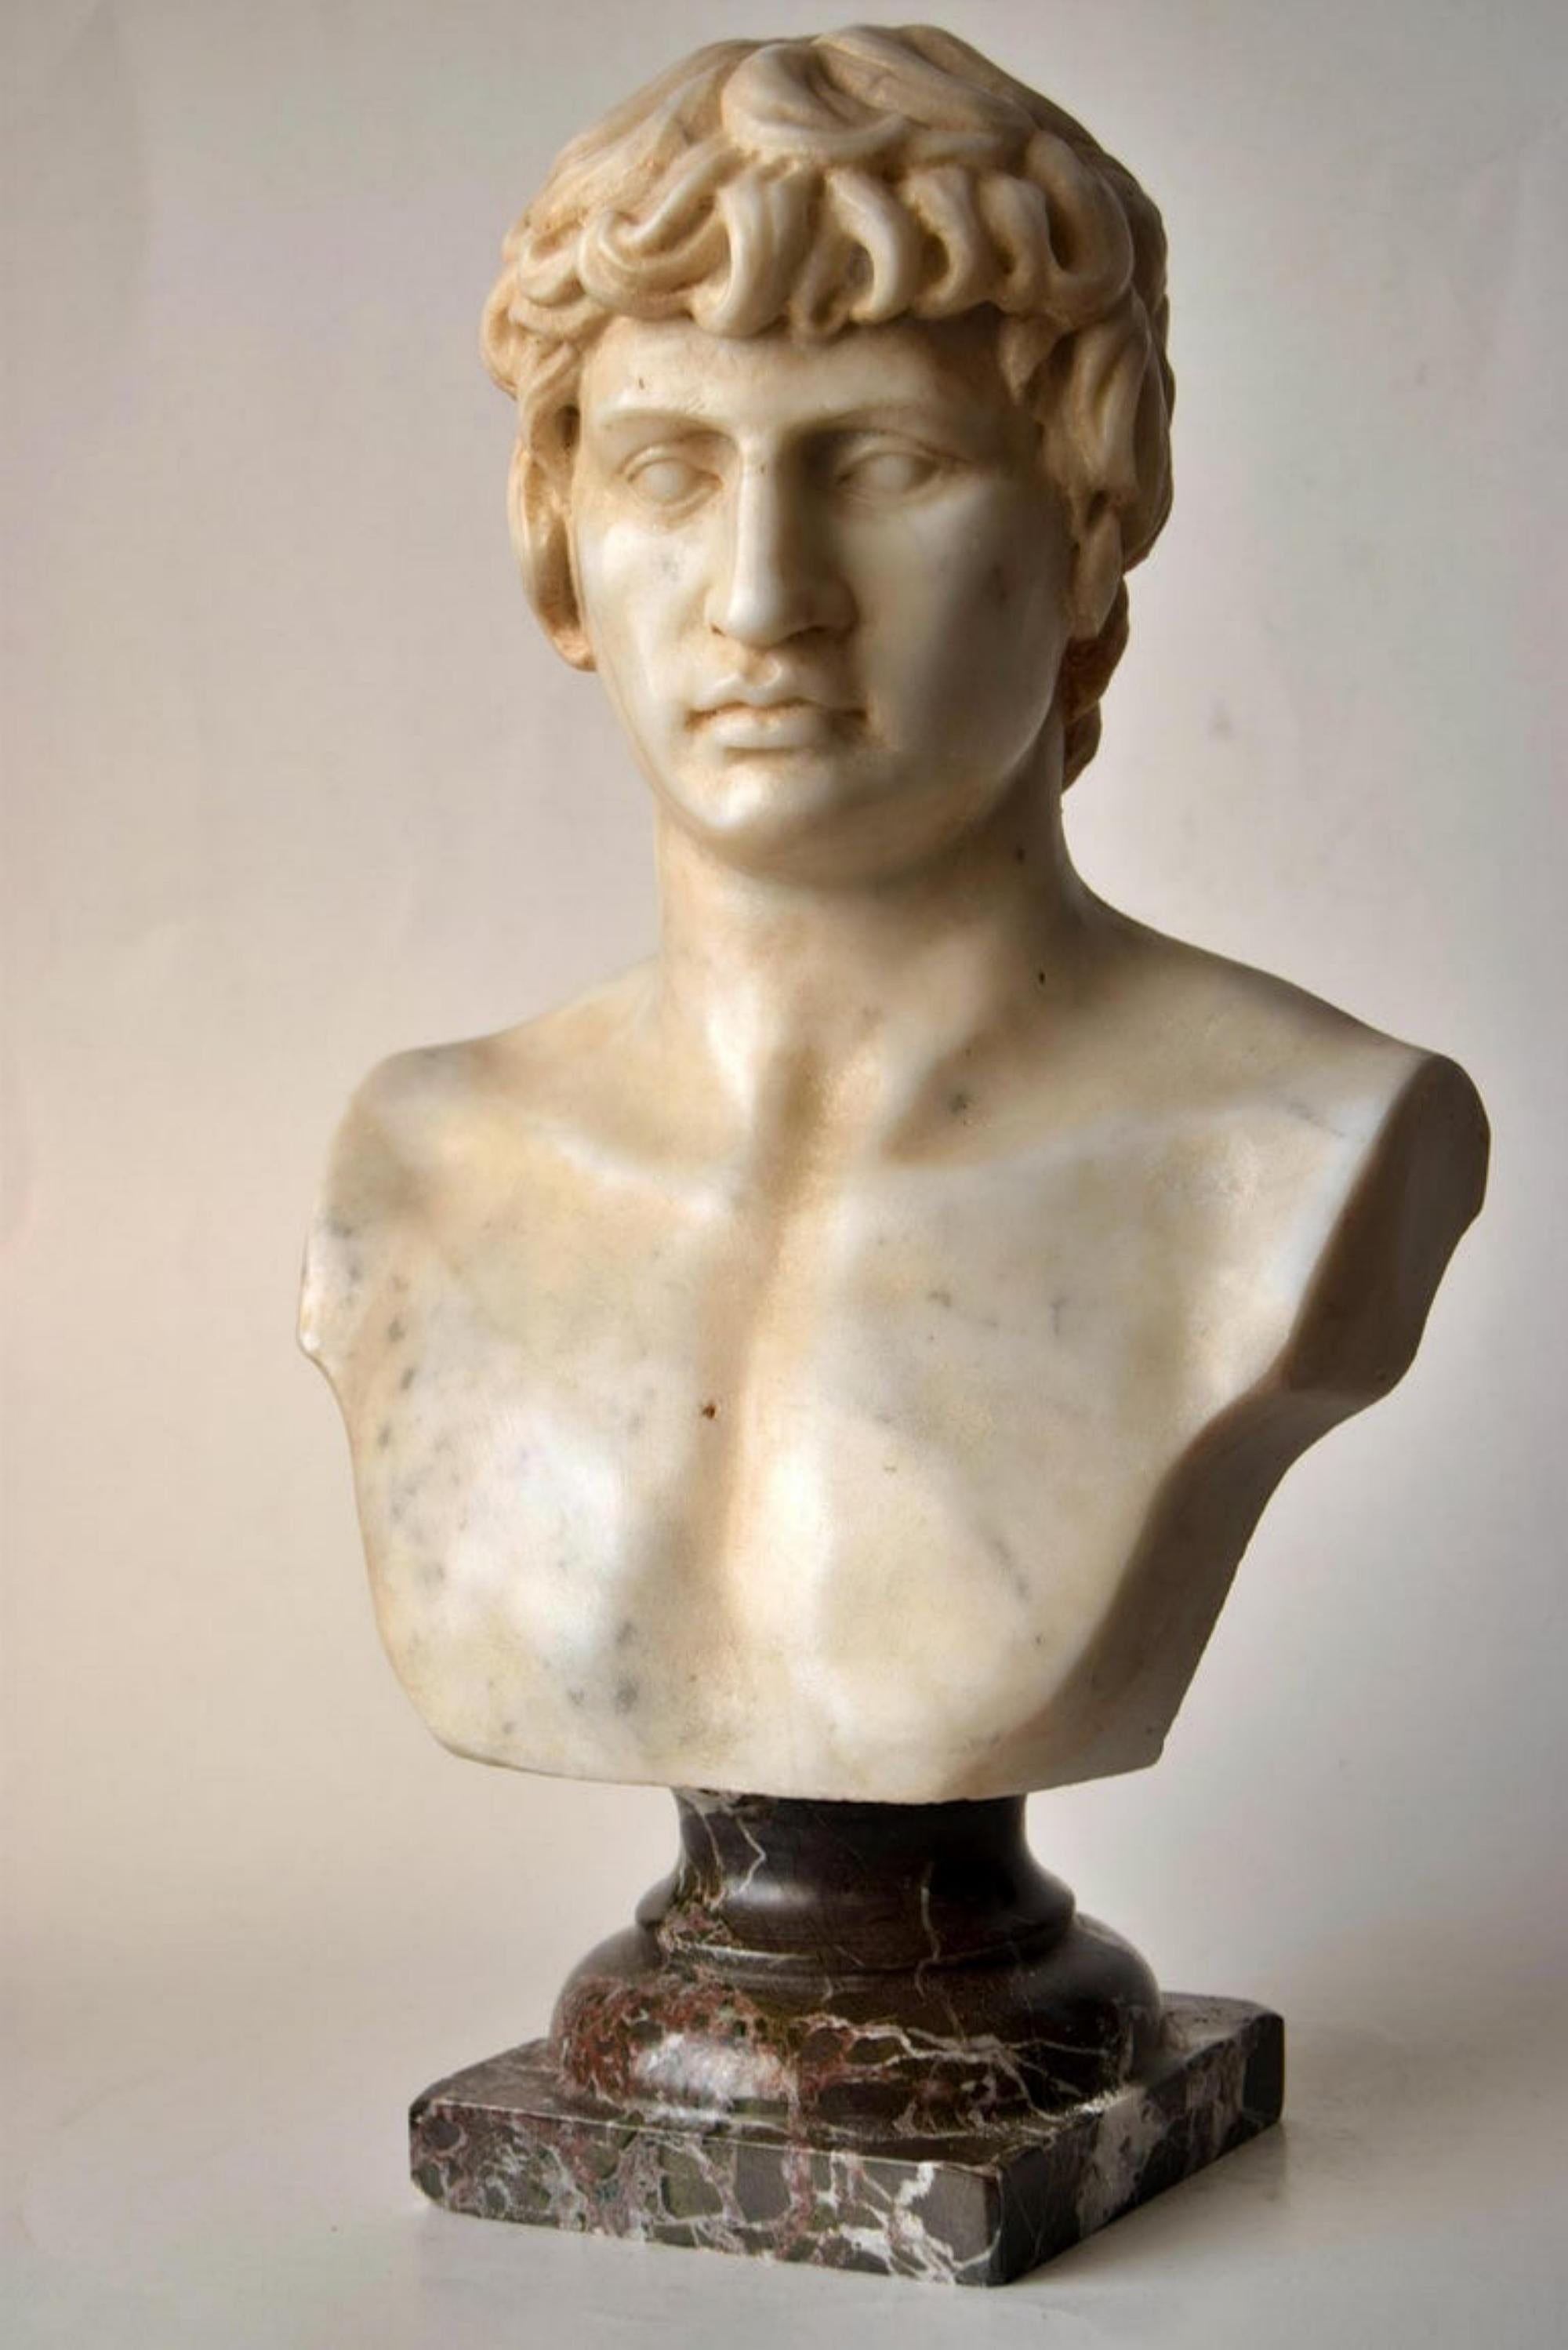 Buste d'antinoüs sculpté sur marbre blanc de Carrare début 20ème siècle.
Posé sur un socle tourné en marbre rouge de Levanzo.
Dimensions : 35 x 20 x 12cm.
Parfait état pour l'âge.